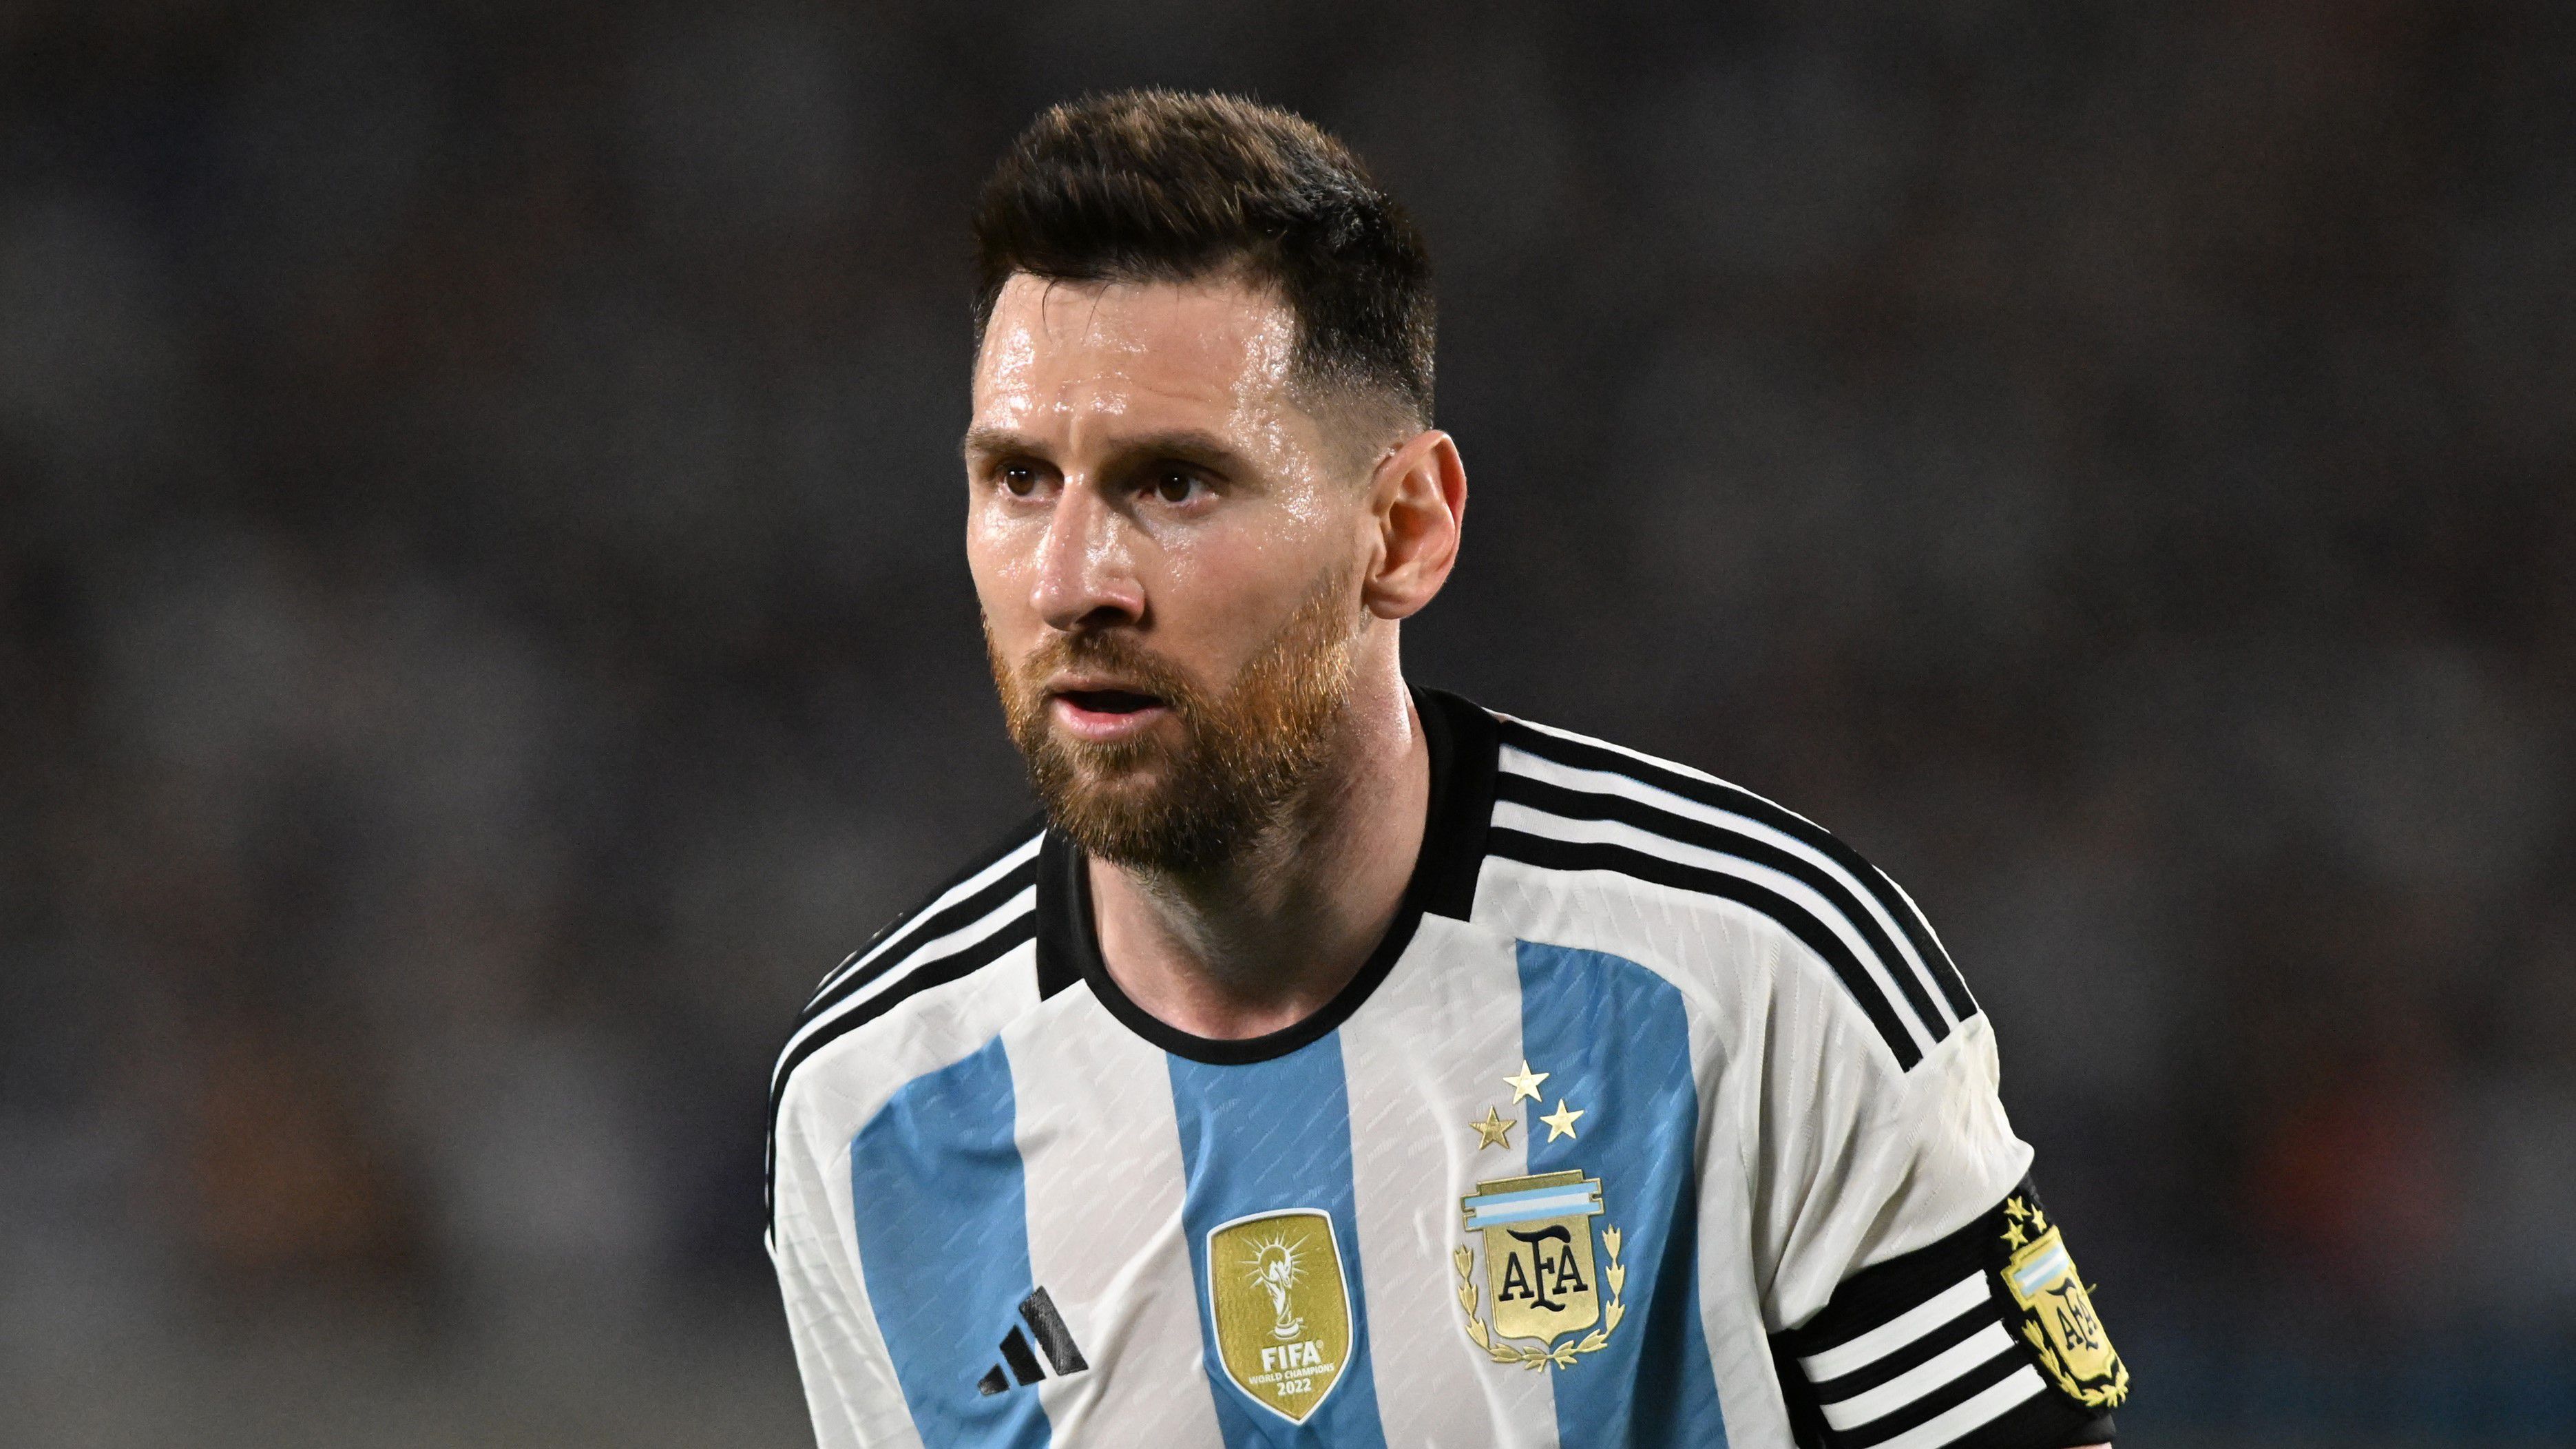 Eldőlt, Lionel Messi az MLS-ben folyatja